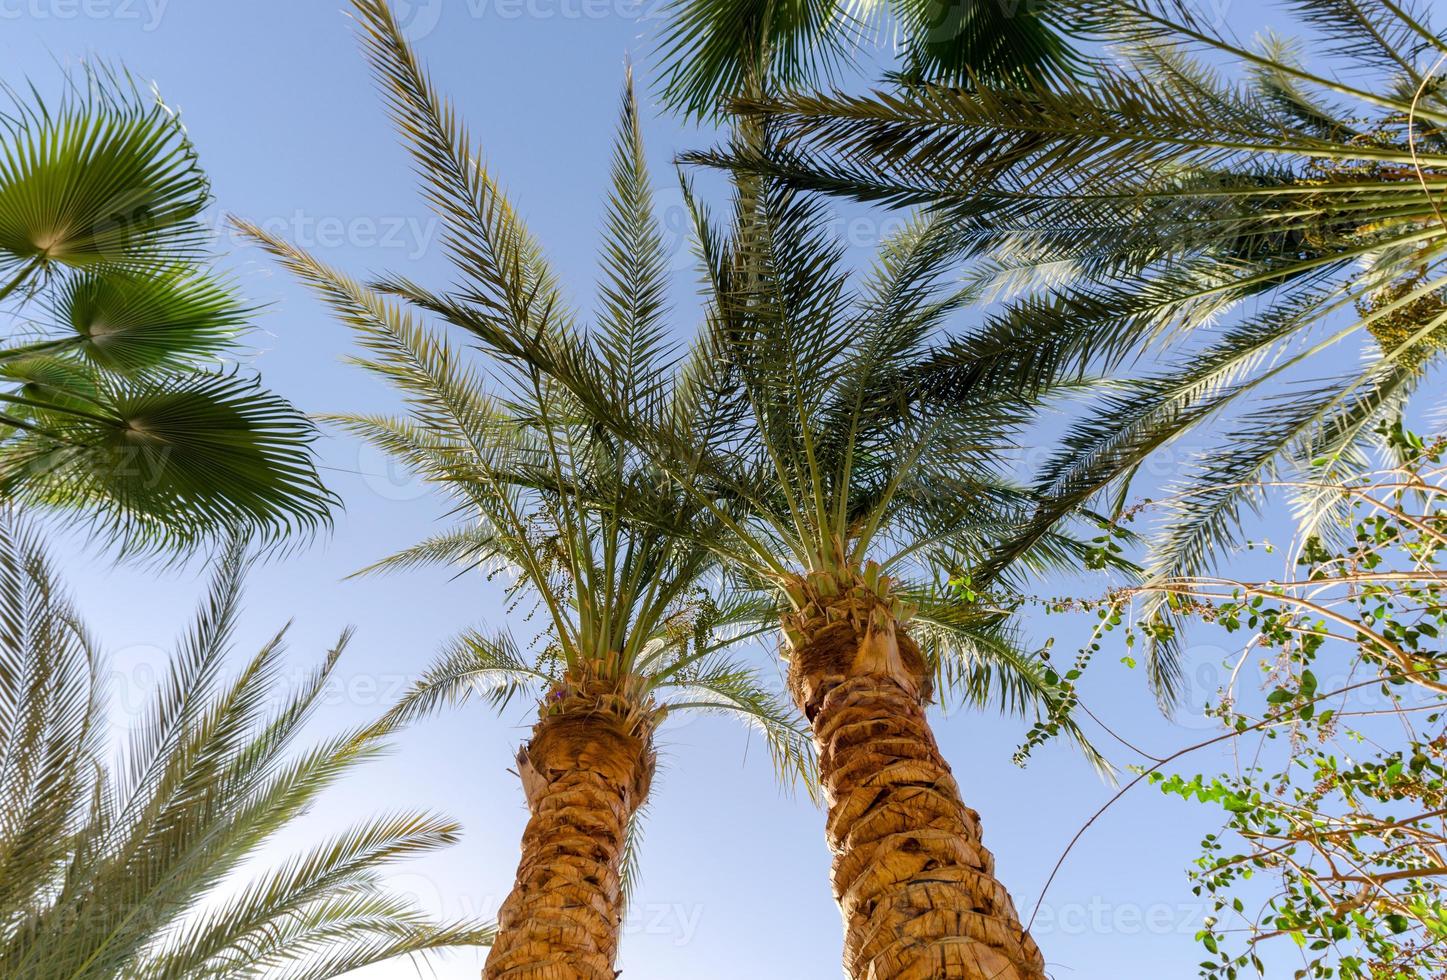 fond tropical branches de palmier frais photo